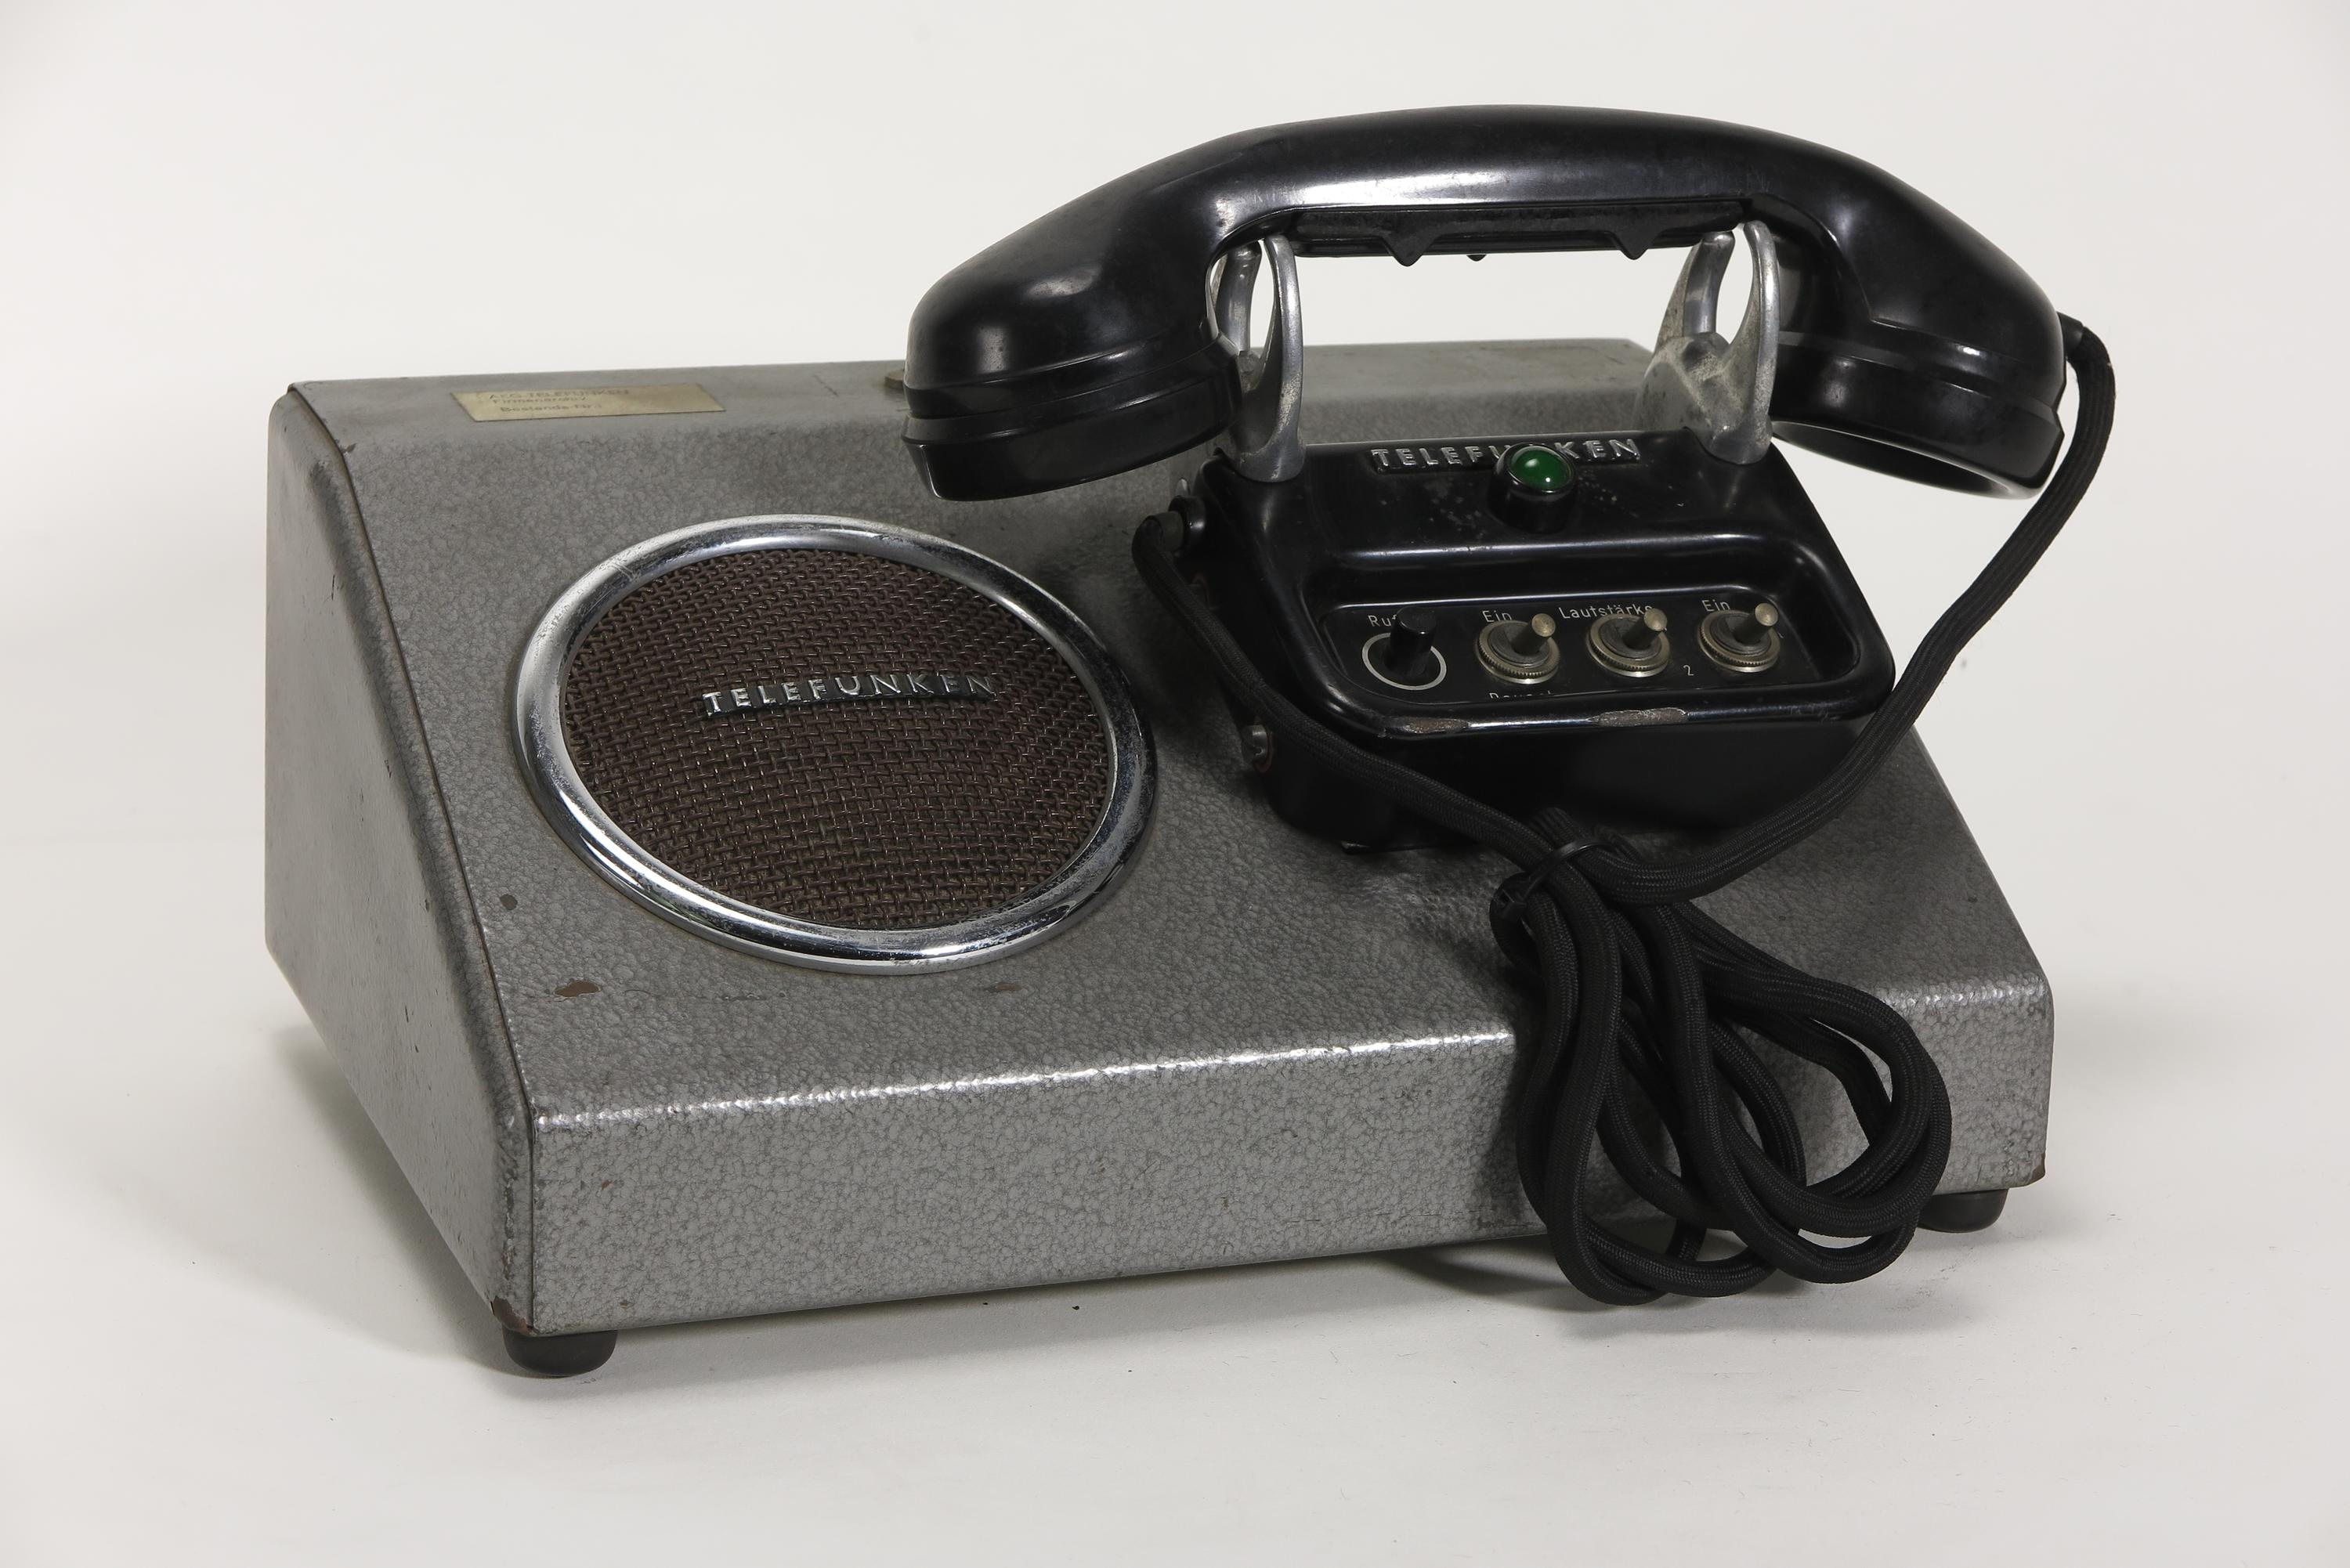 Bedieneinheit BeG 134/2 zur UKW-Funkanlage Telefunken 80 Dora 2 bzw.160 Dora 2 (Deutsches Technikmuseum CC BY)